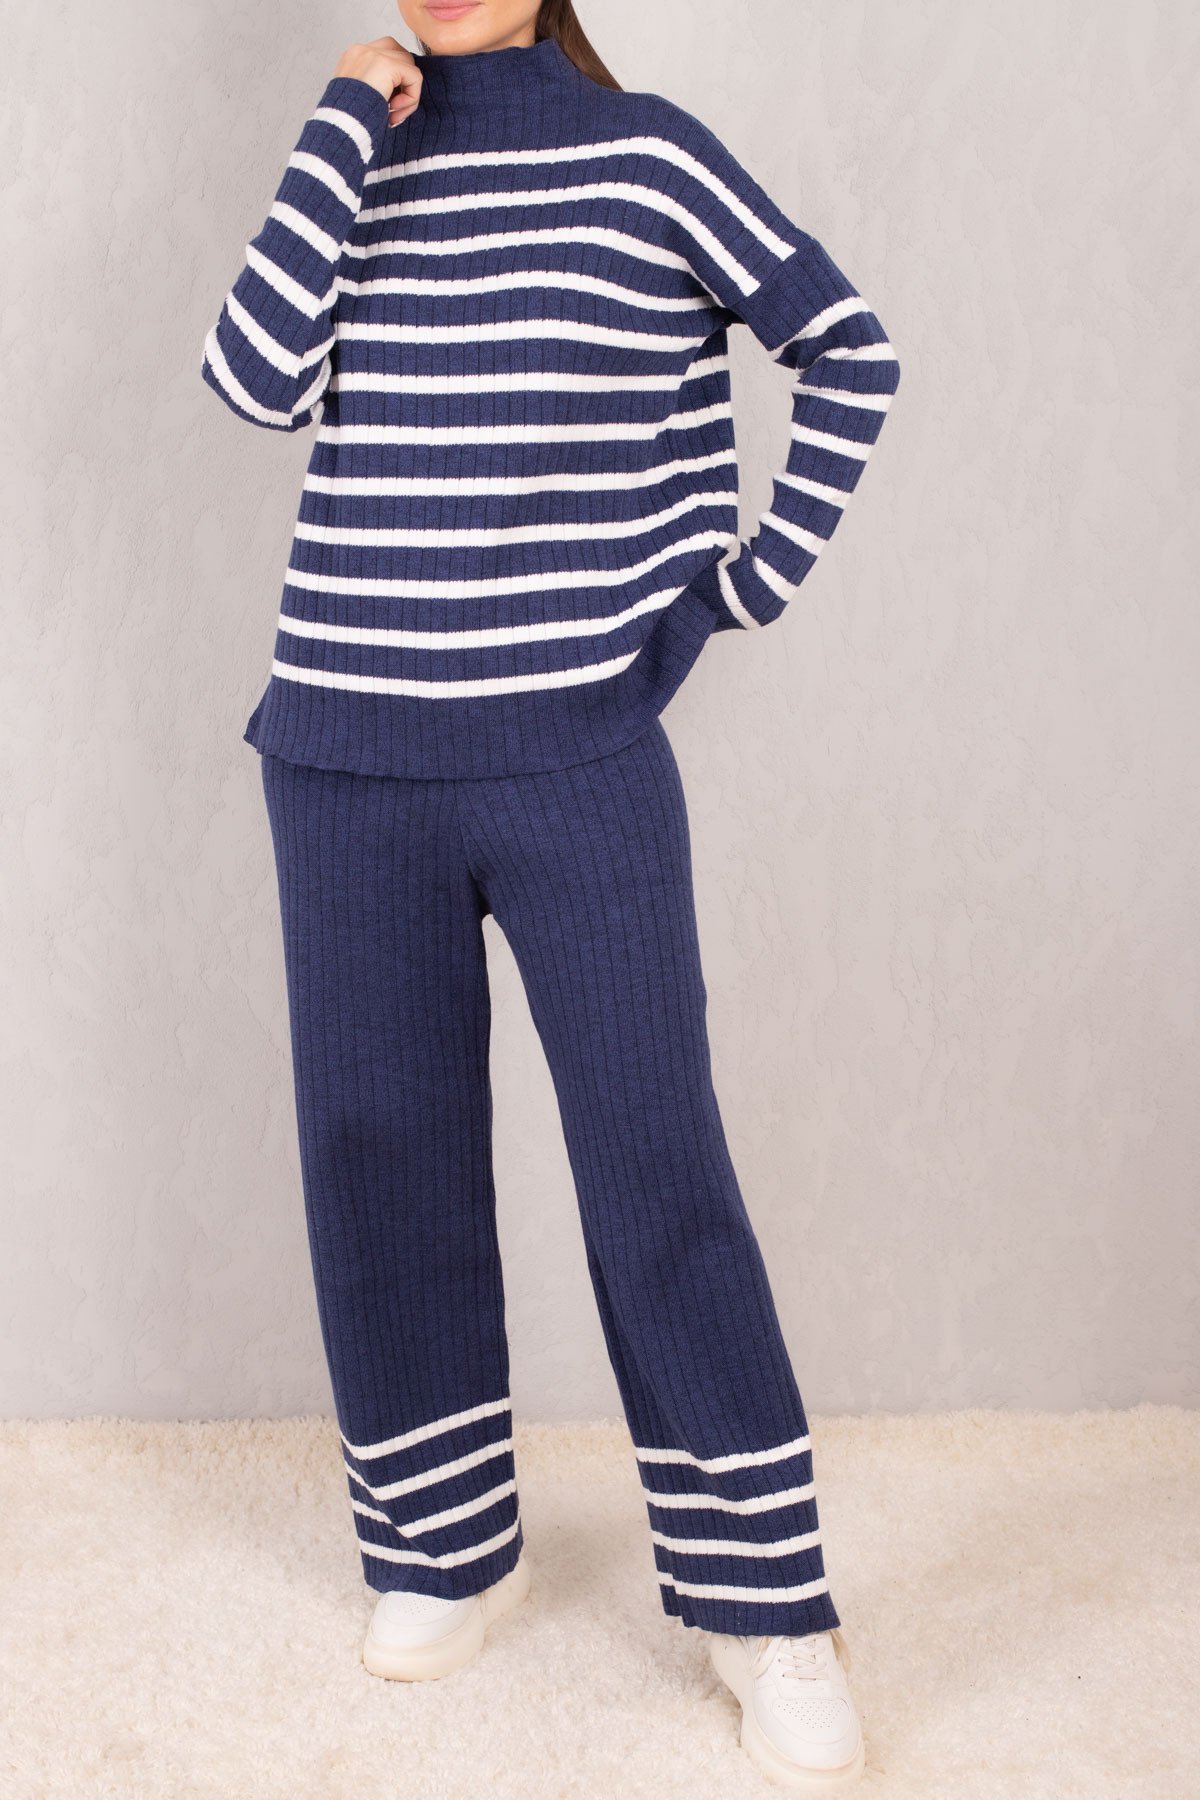 Levně armonika Women's Navy Blue Line Patterned High Neck Knitwear Suit